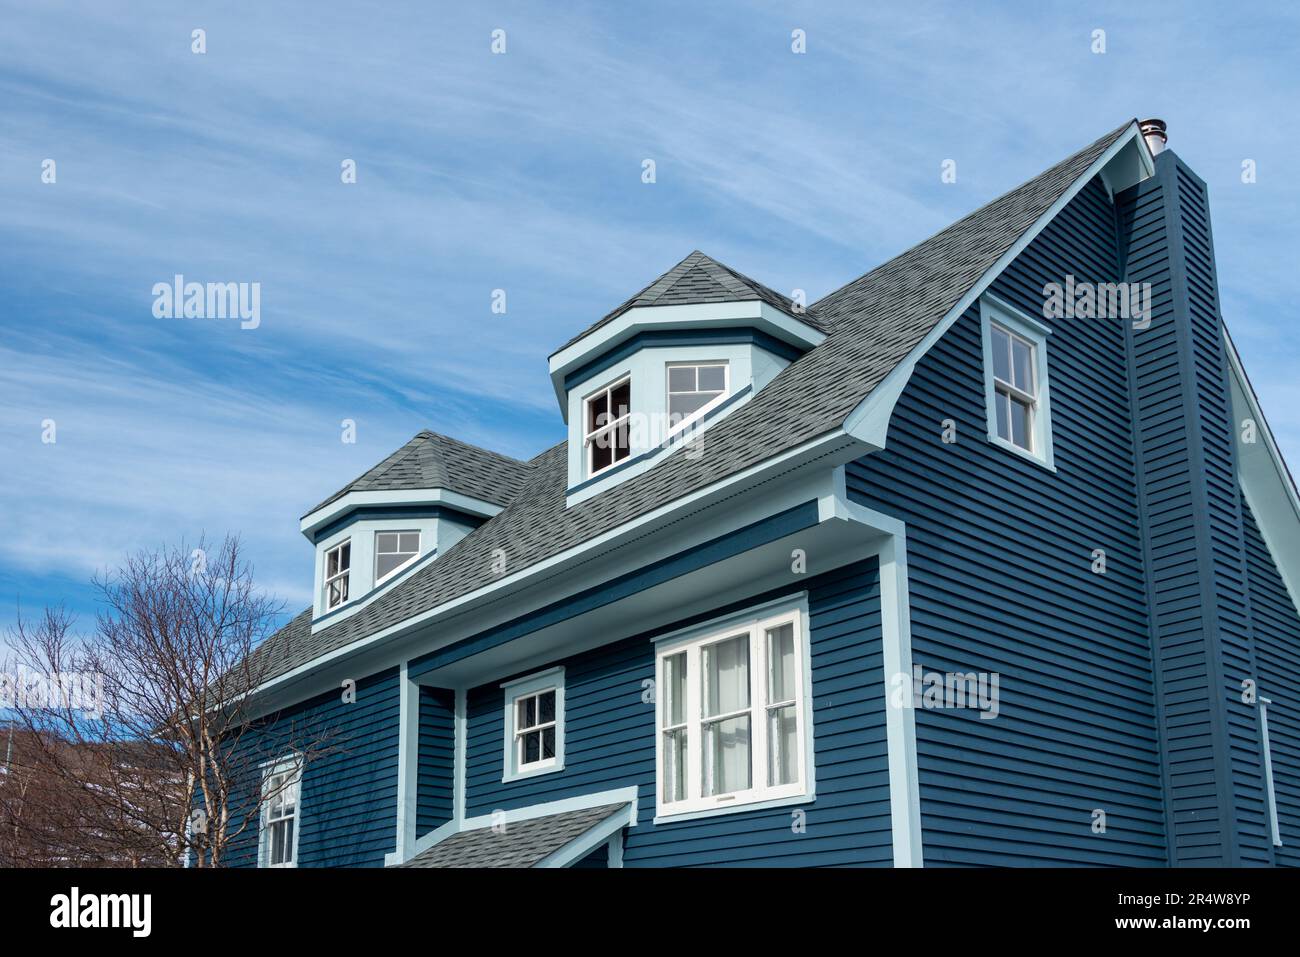 La vue extérieure de deux lucarnes polygonales sur un toit bleu moderne d'une maison en bois. Les lucarnes à plusieurs côtés ont trois fenêtres à double penture. Banque D'Images